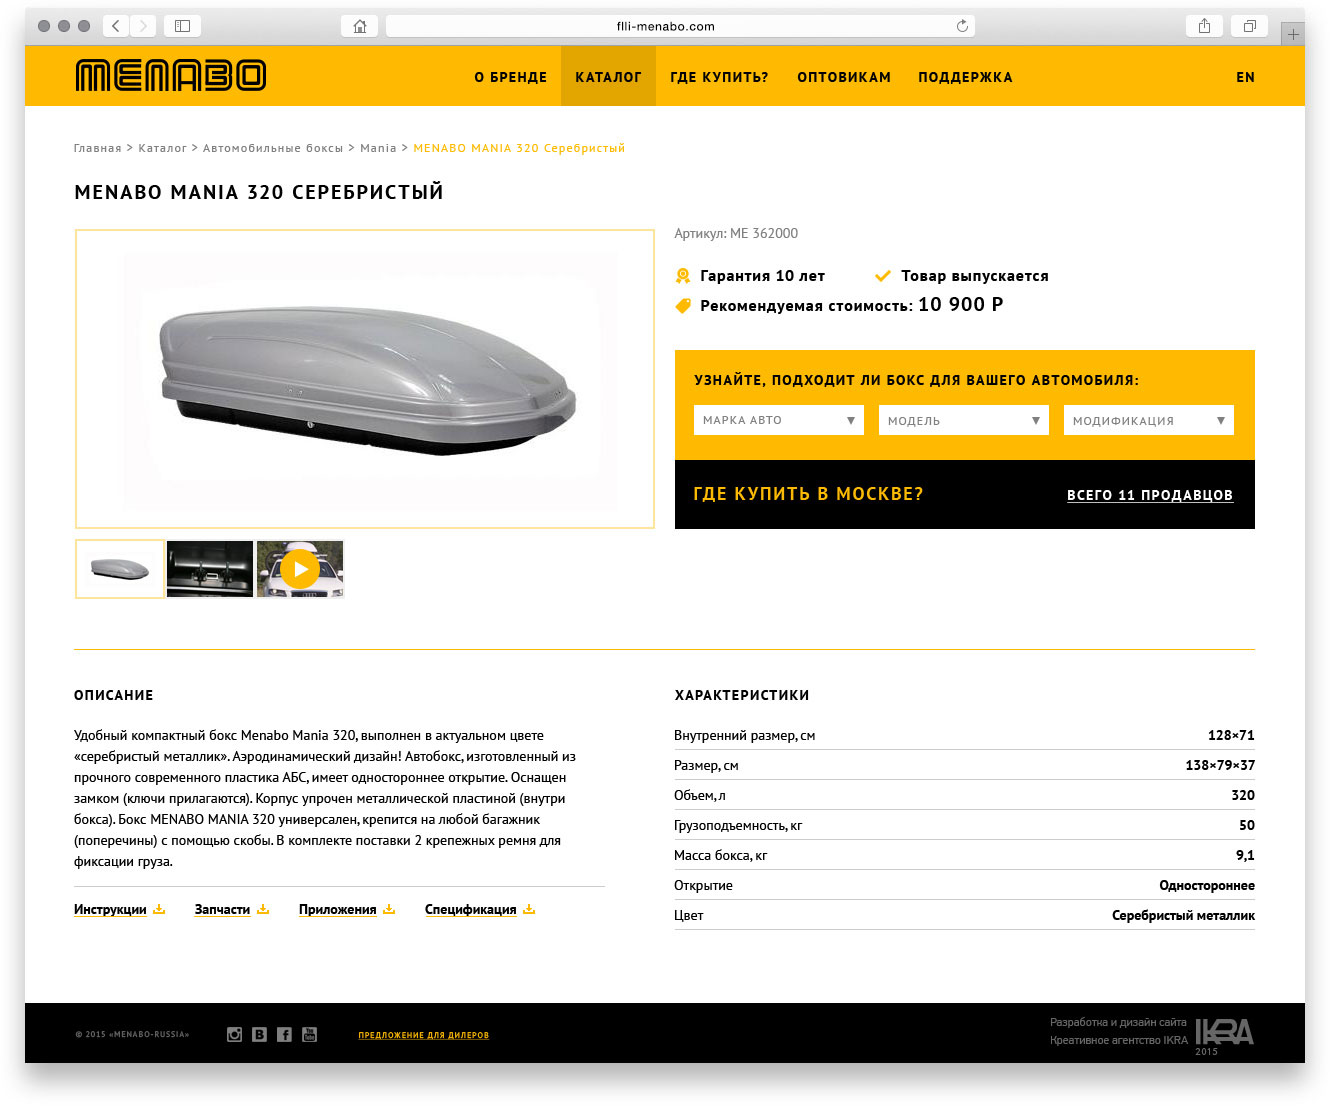 Создание российского сайта итальянского производителя авто-аксессуаров Menabo